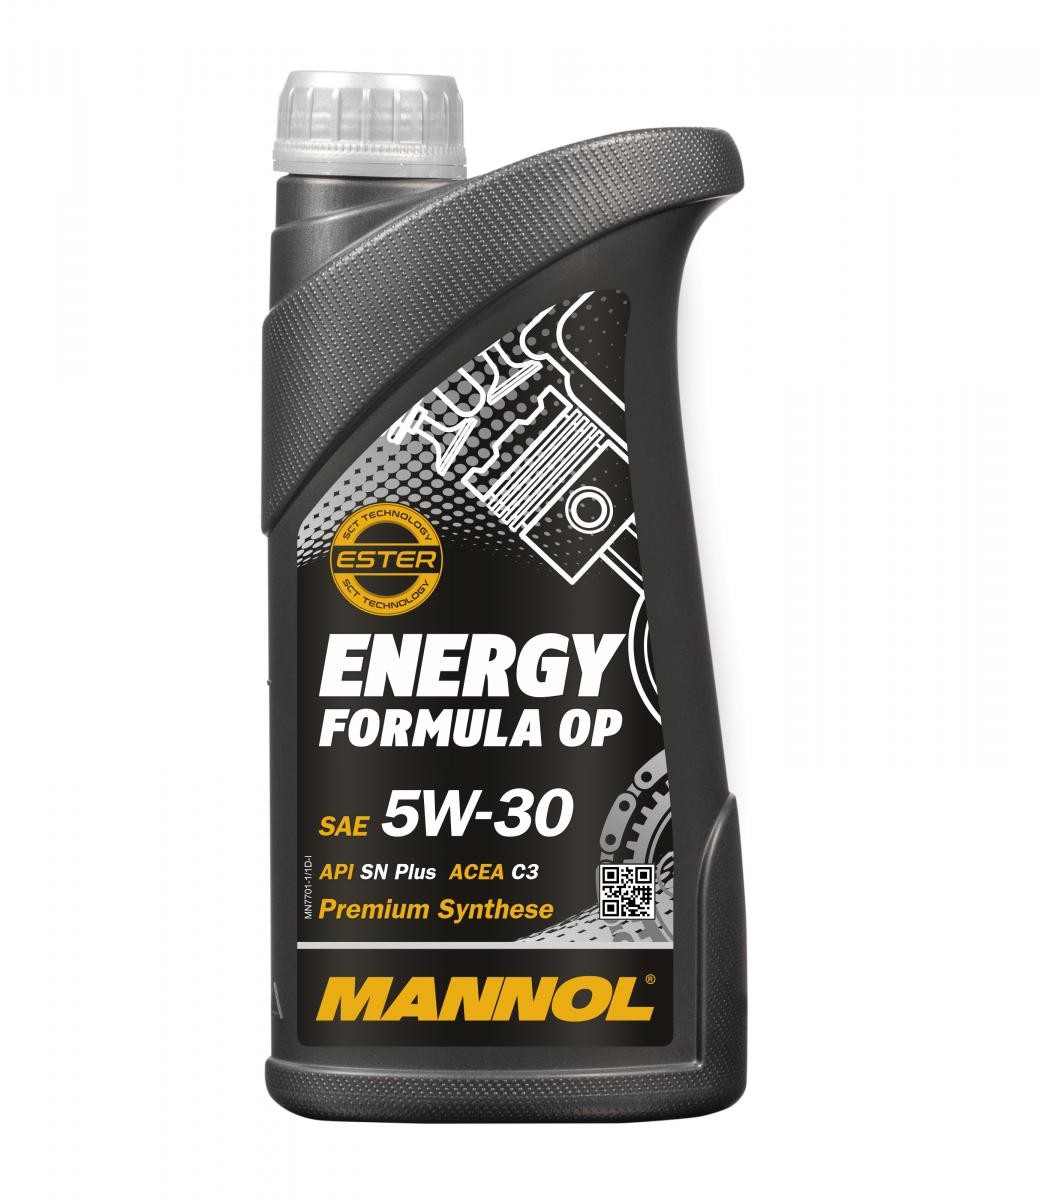 MANNOL MN7701-1 originálne NISSAN Motorový olej 5W-30, 1l, Plno synteticky olej